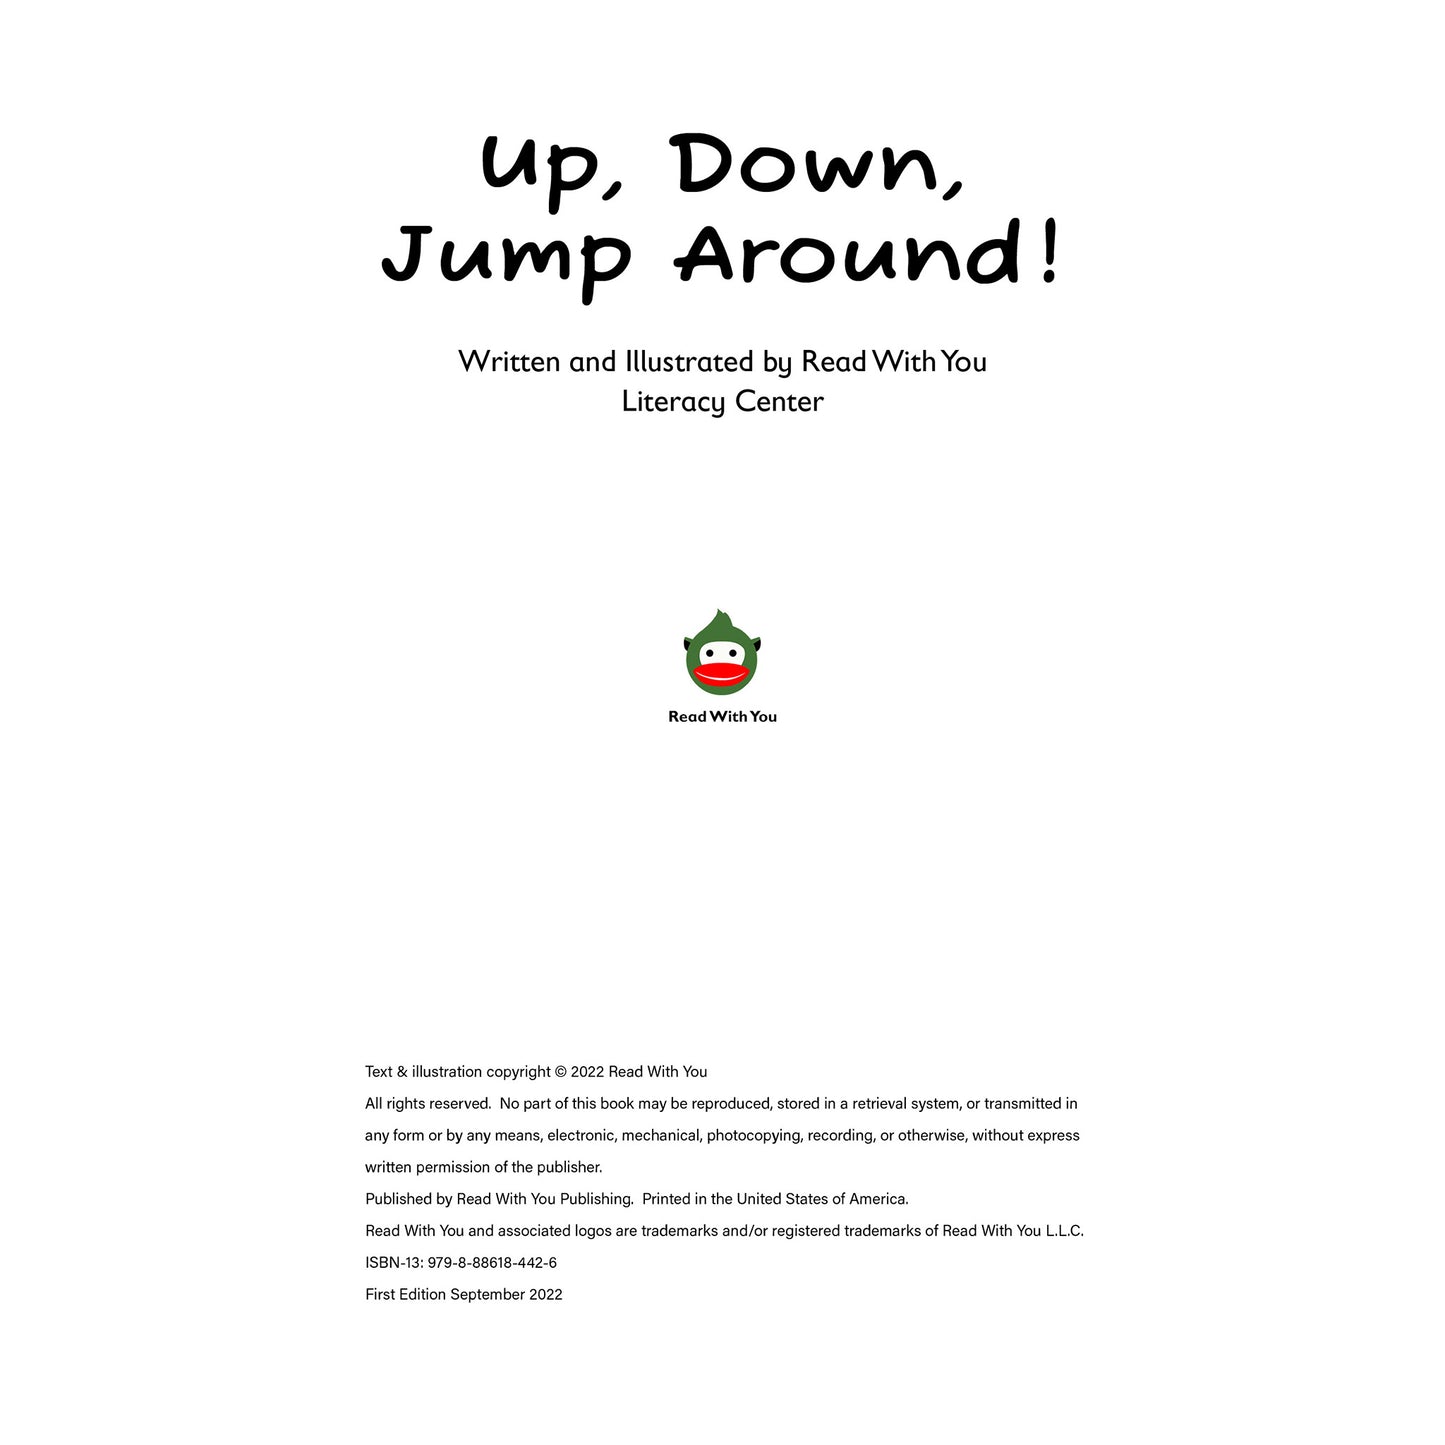 Up, Down, Jump Around!